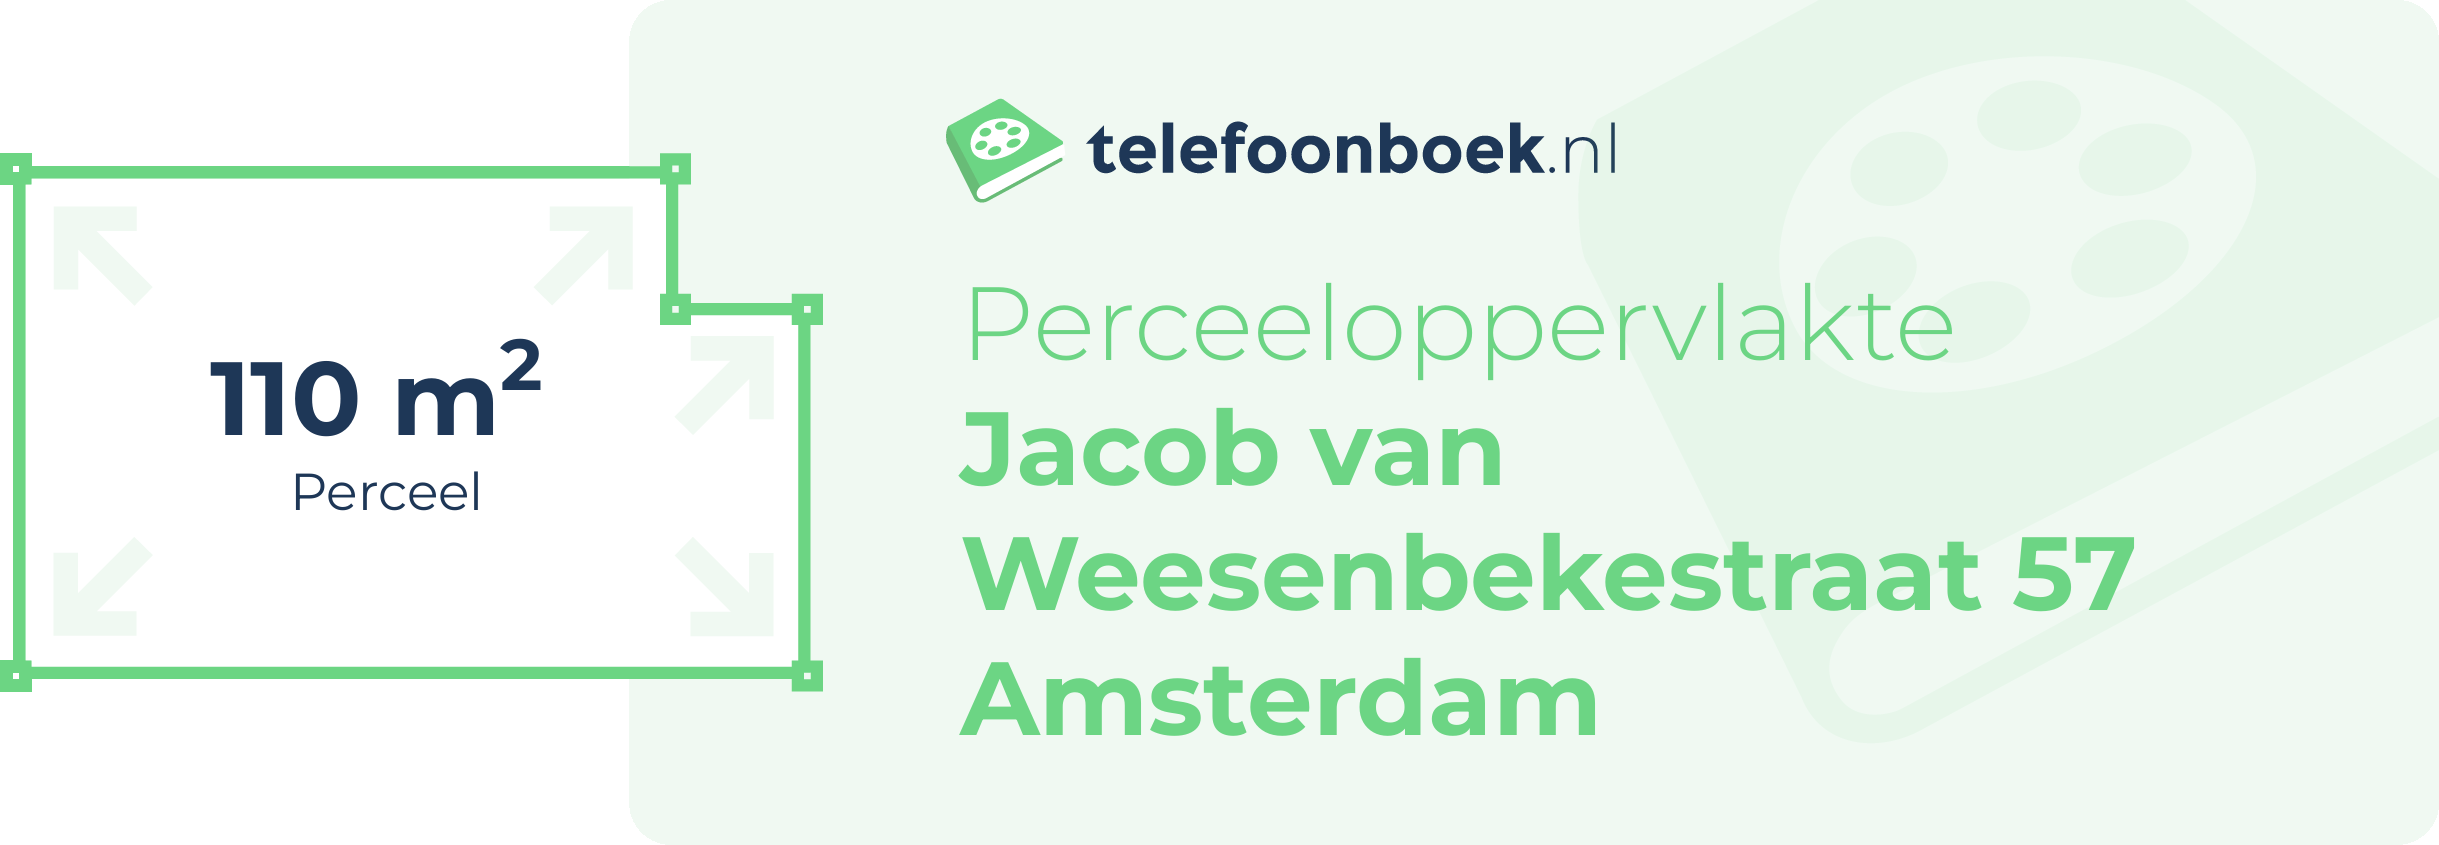 Perceeloppervlakte Jacob Van Weesenbekestraat 57 Amsterdam